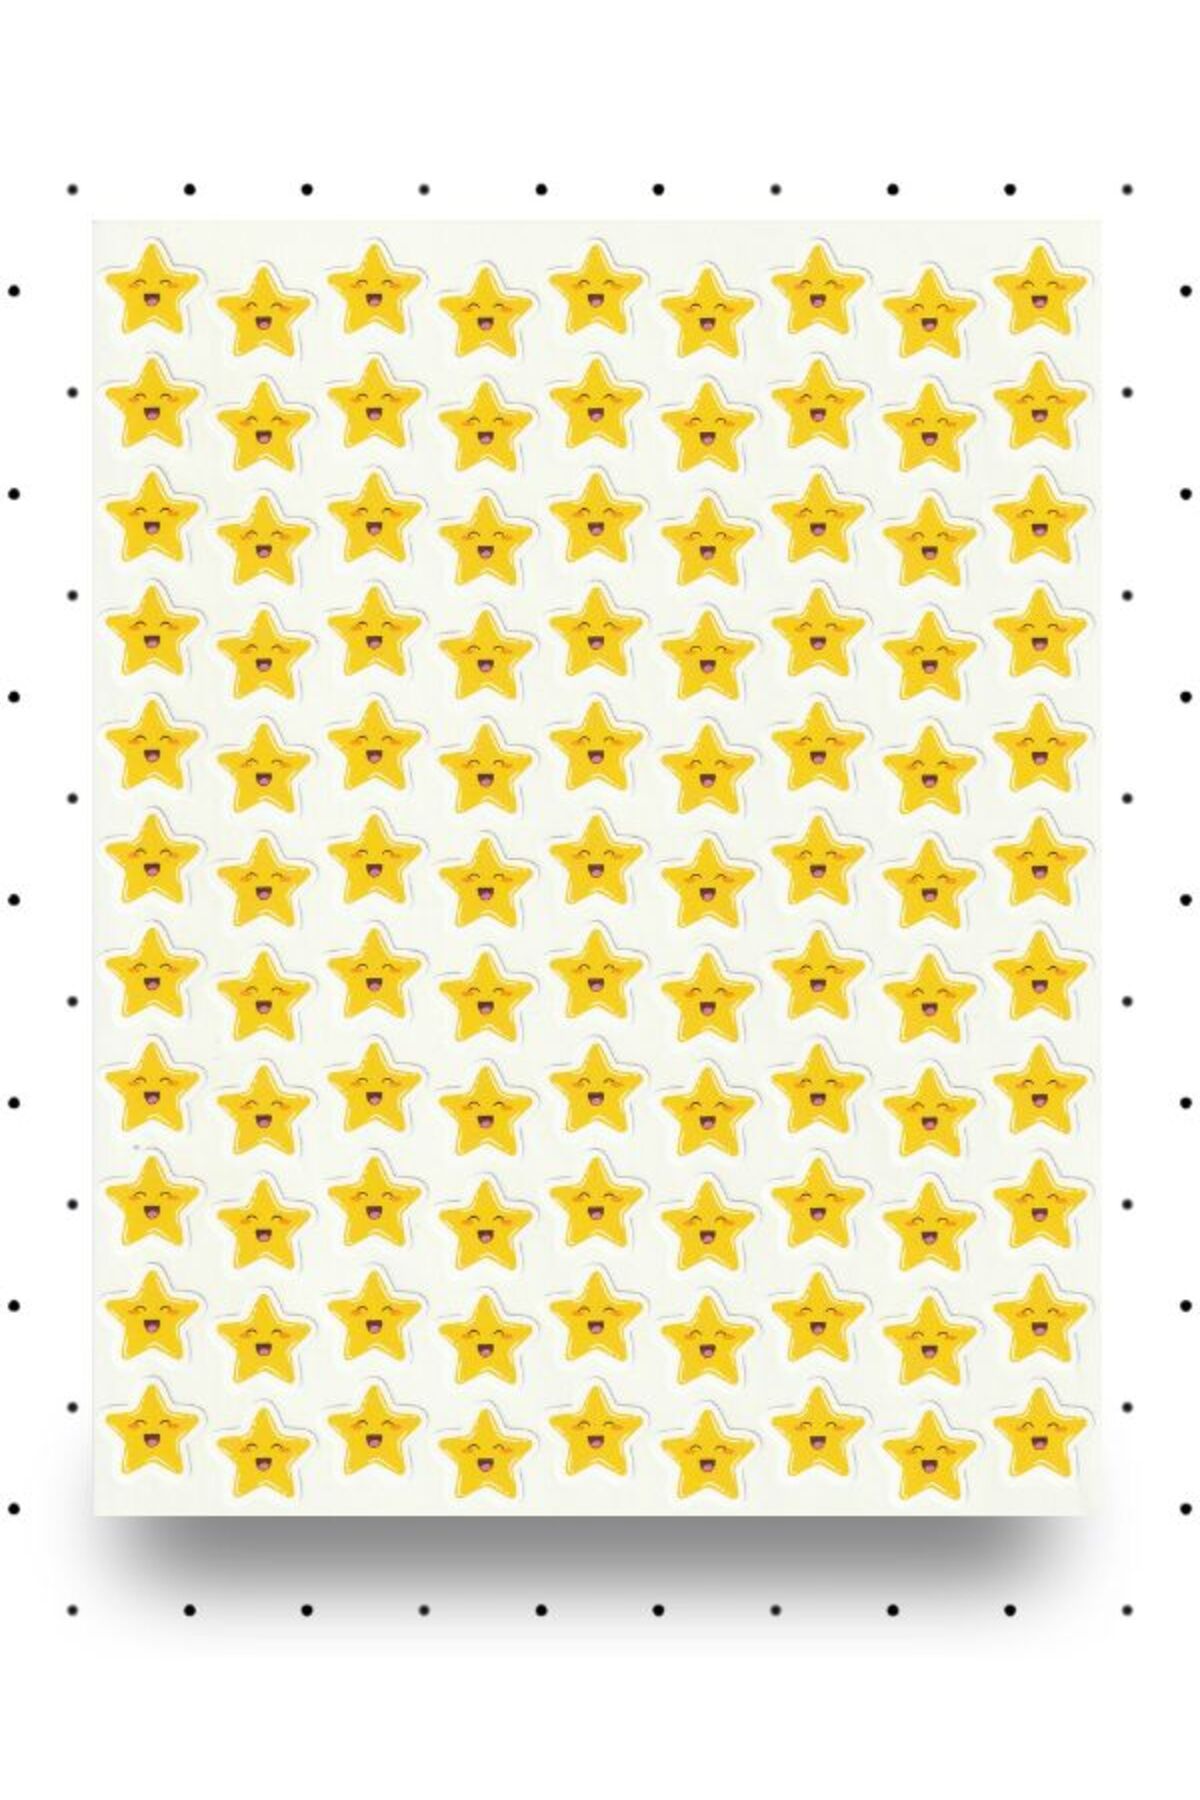 NUNUKİ Neşeli Yıldızlar Sticker Seti 1,5cm Öğretmen Yıldız Ödül Etiket Okul Başarı Çıkartma Nstı0054